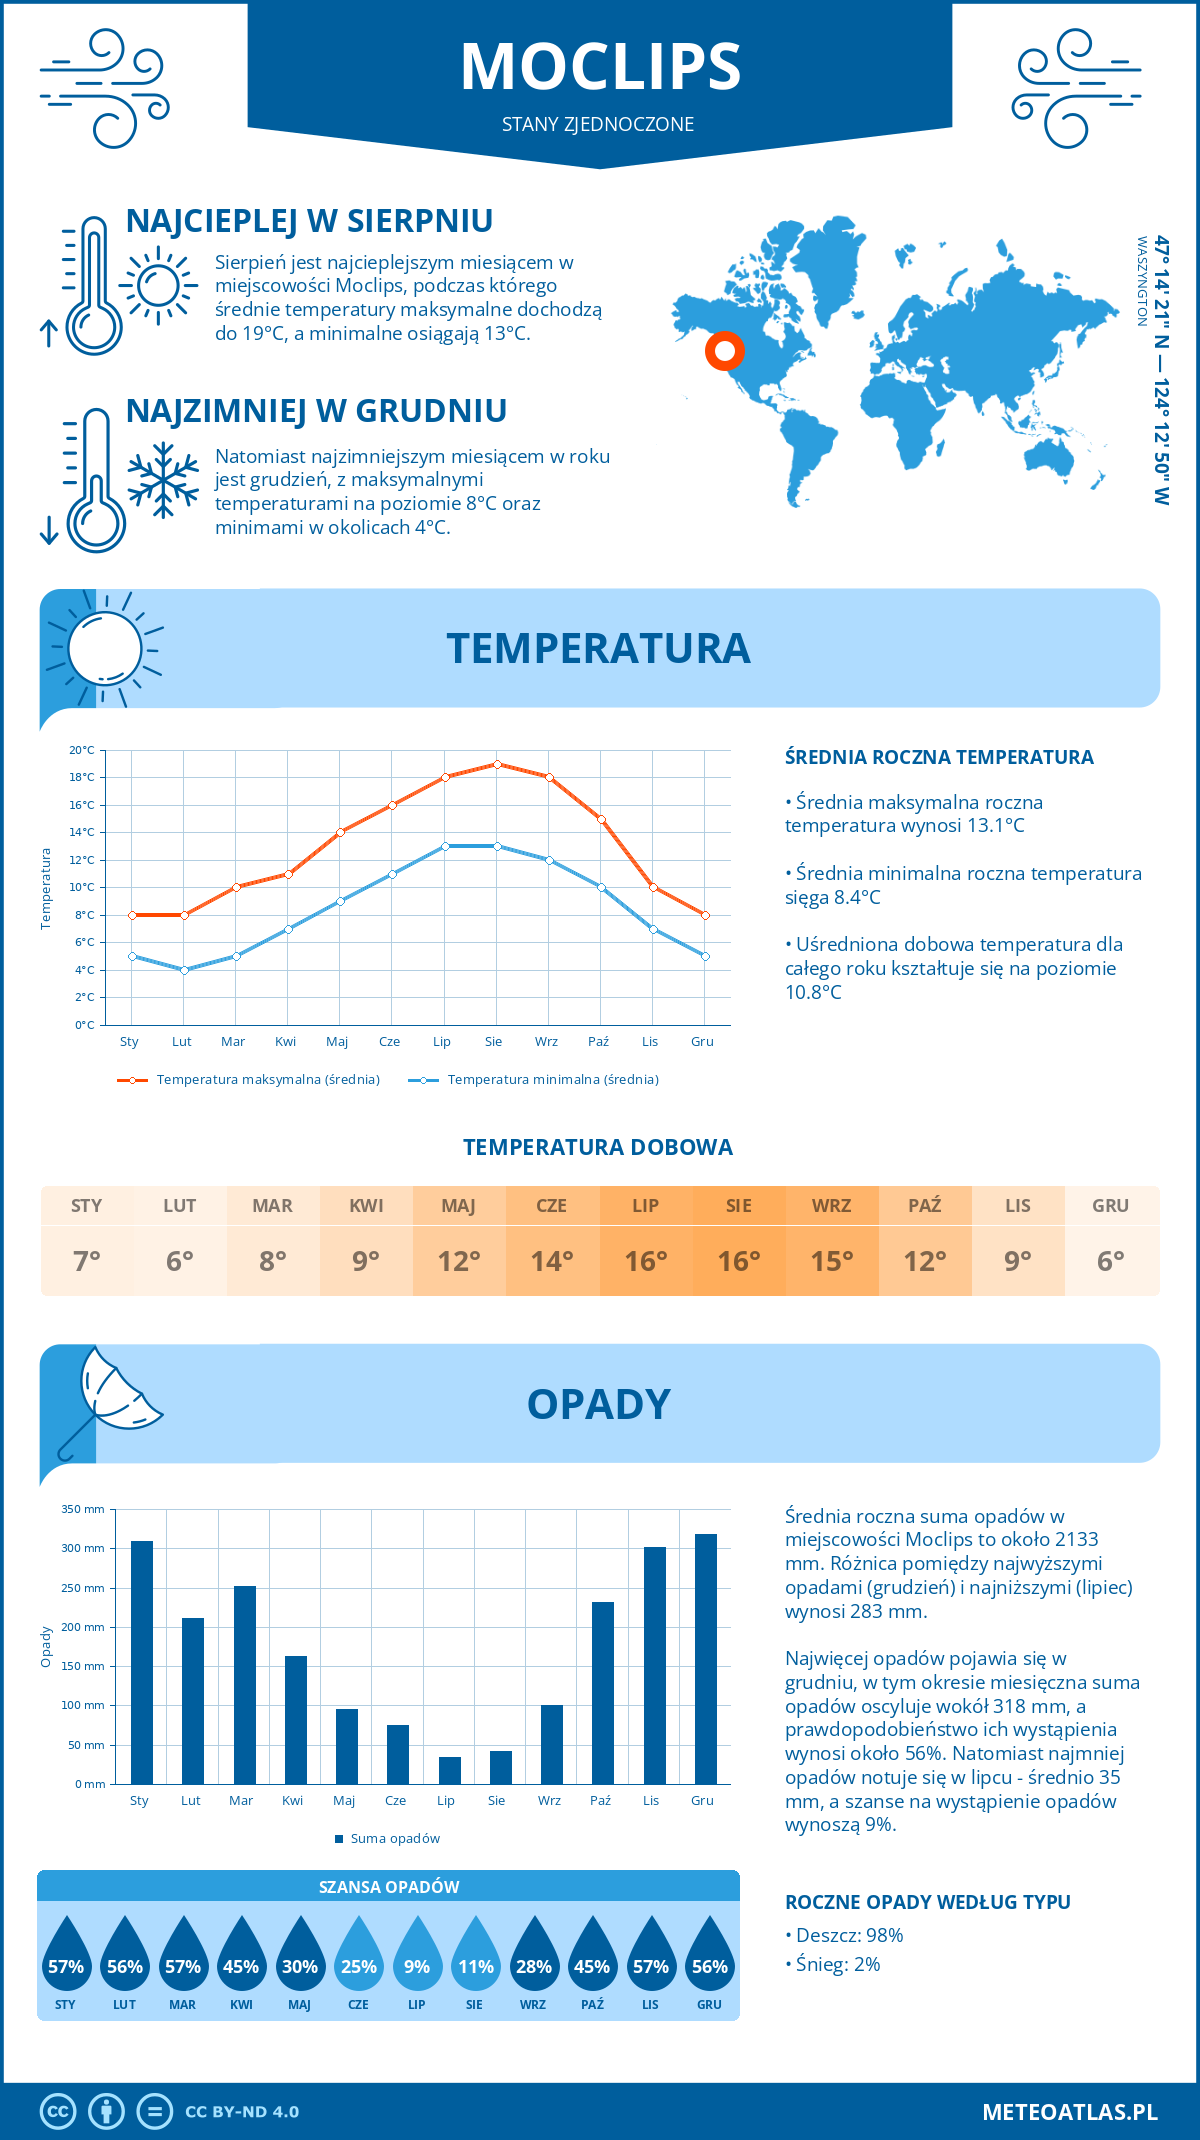 Pogoda Moclips (Stany Zjednoczone). Temperatura oraz opady.